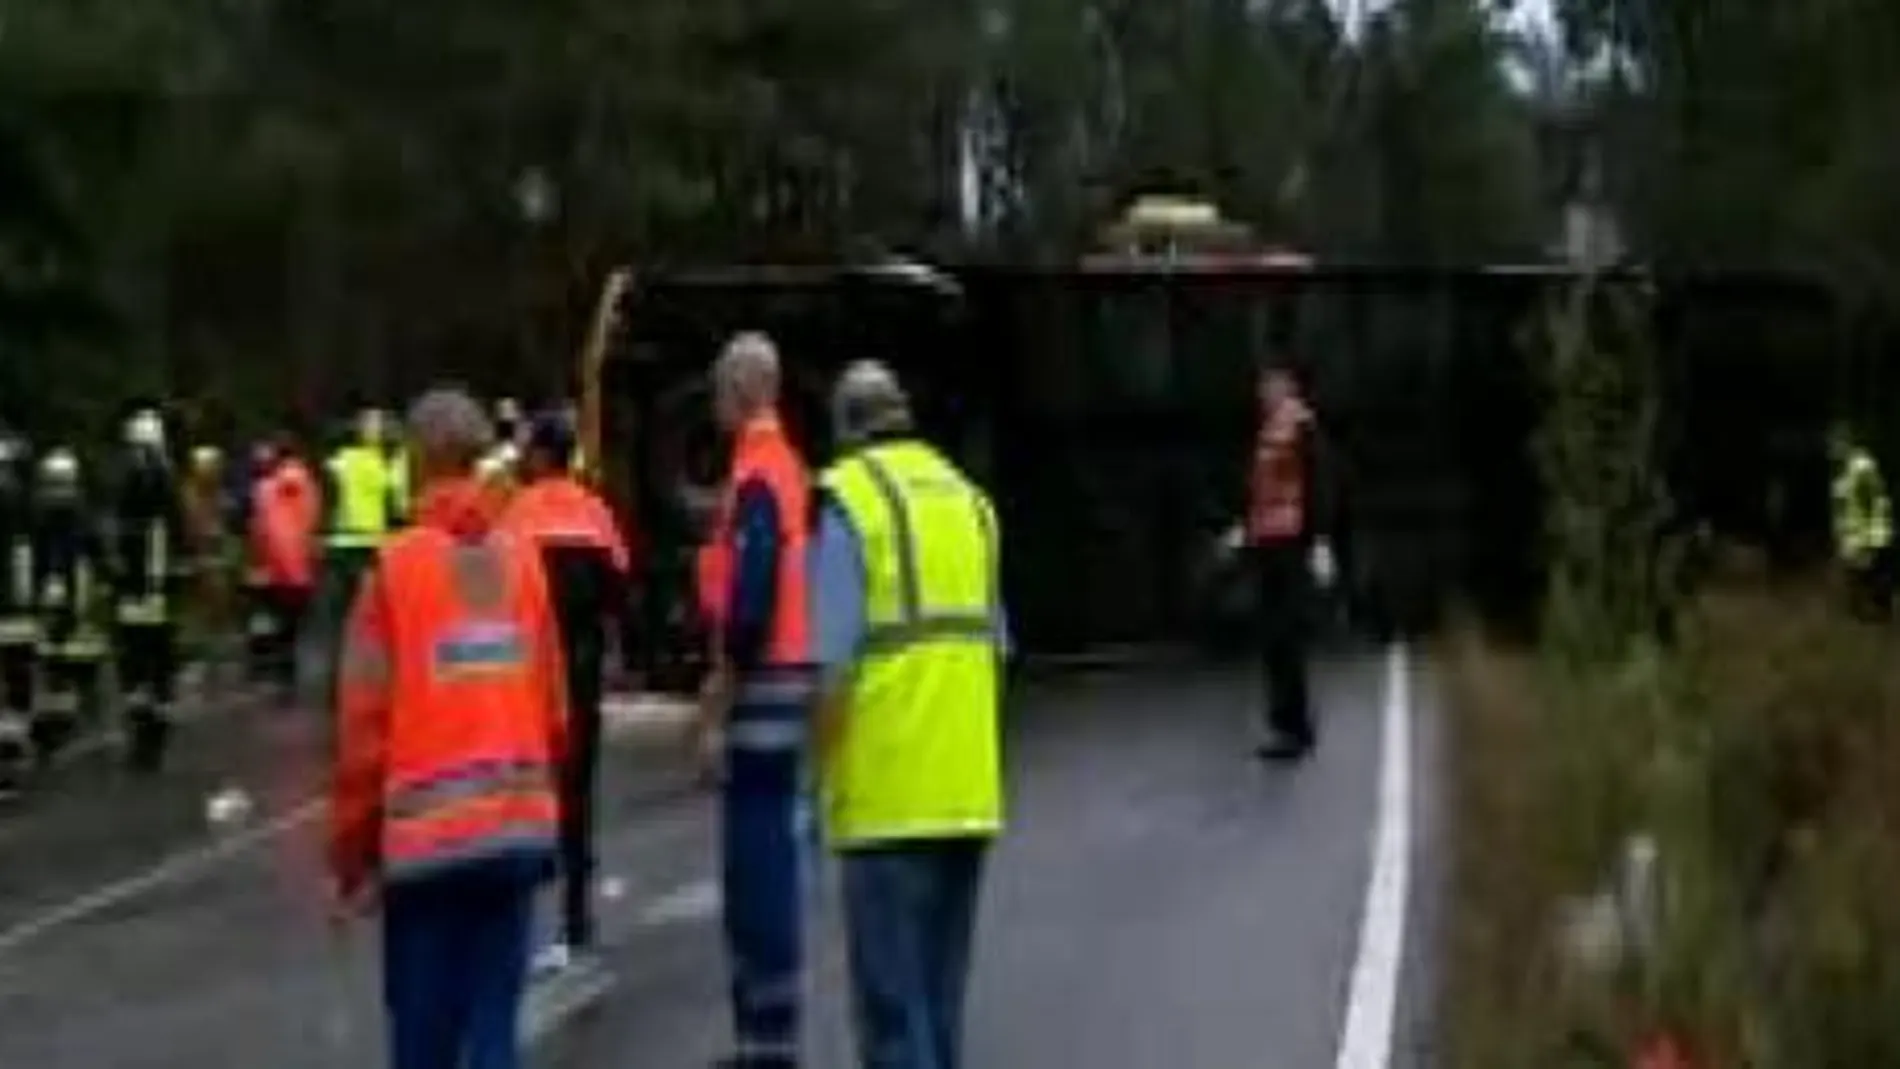 El accidente tuvo lugar a la altura del kilómetro 1,800 de la carretera EP-8001, entre las localidades pontevedresas de Catoira y Caldas de Reis